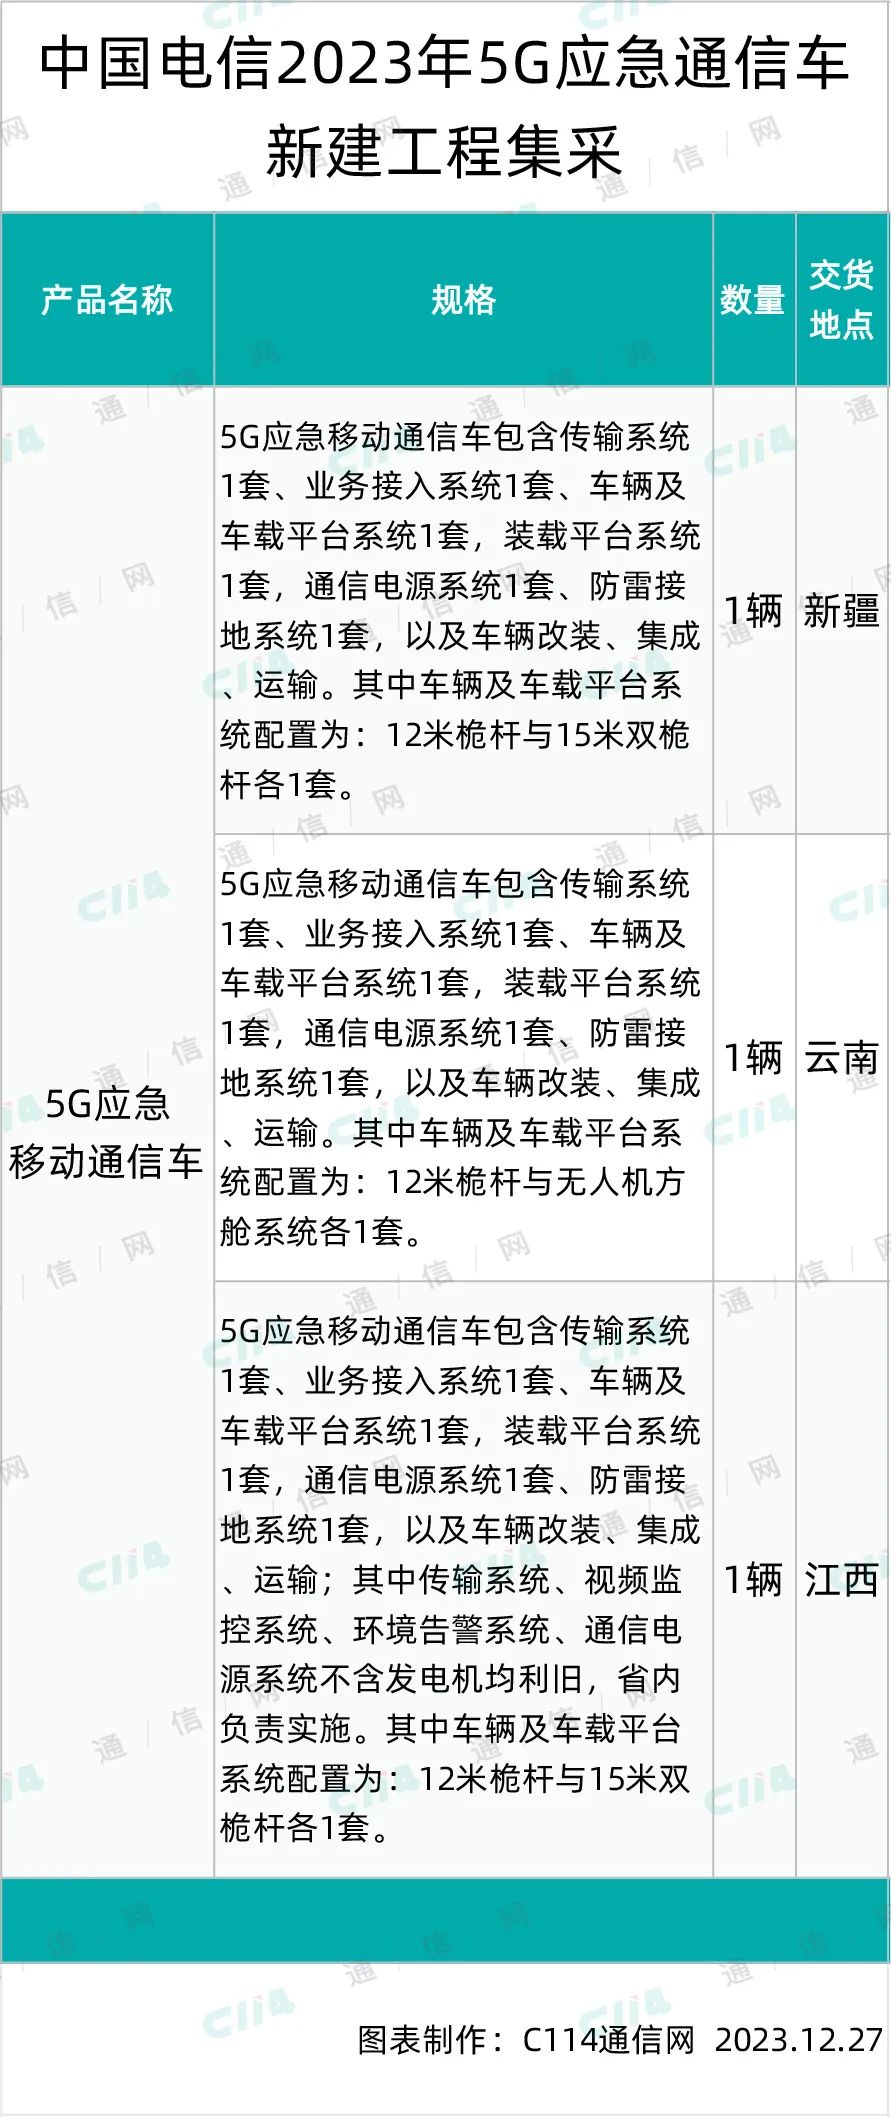 中国电信5G应急通信车新建工程集采：迪马工业入围，报价约887万元